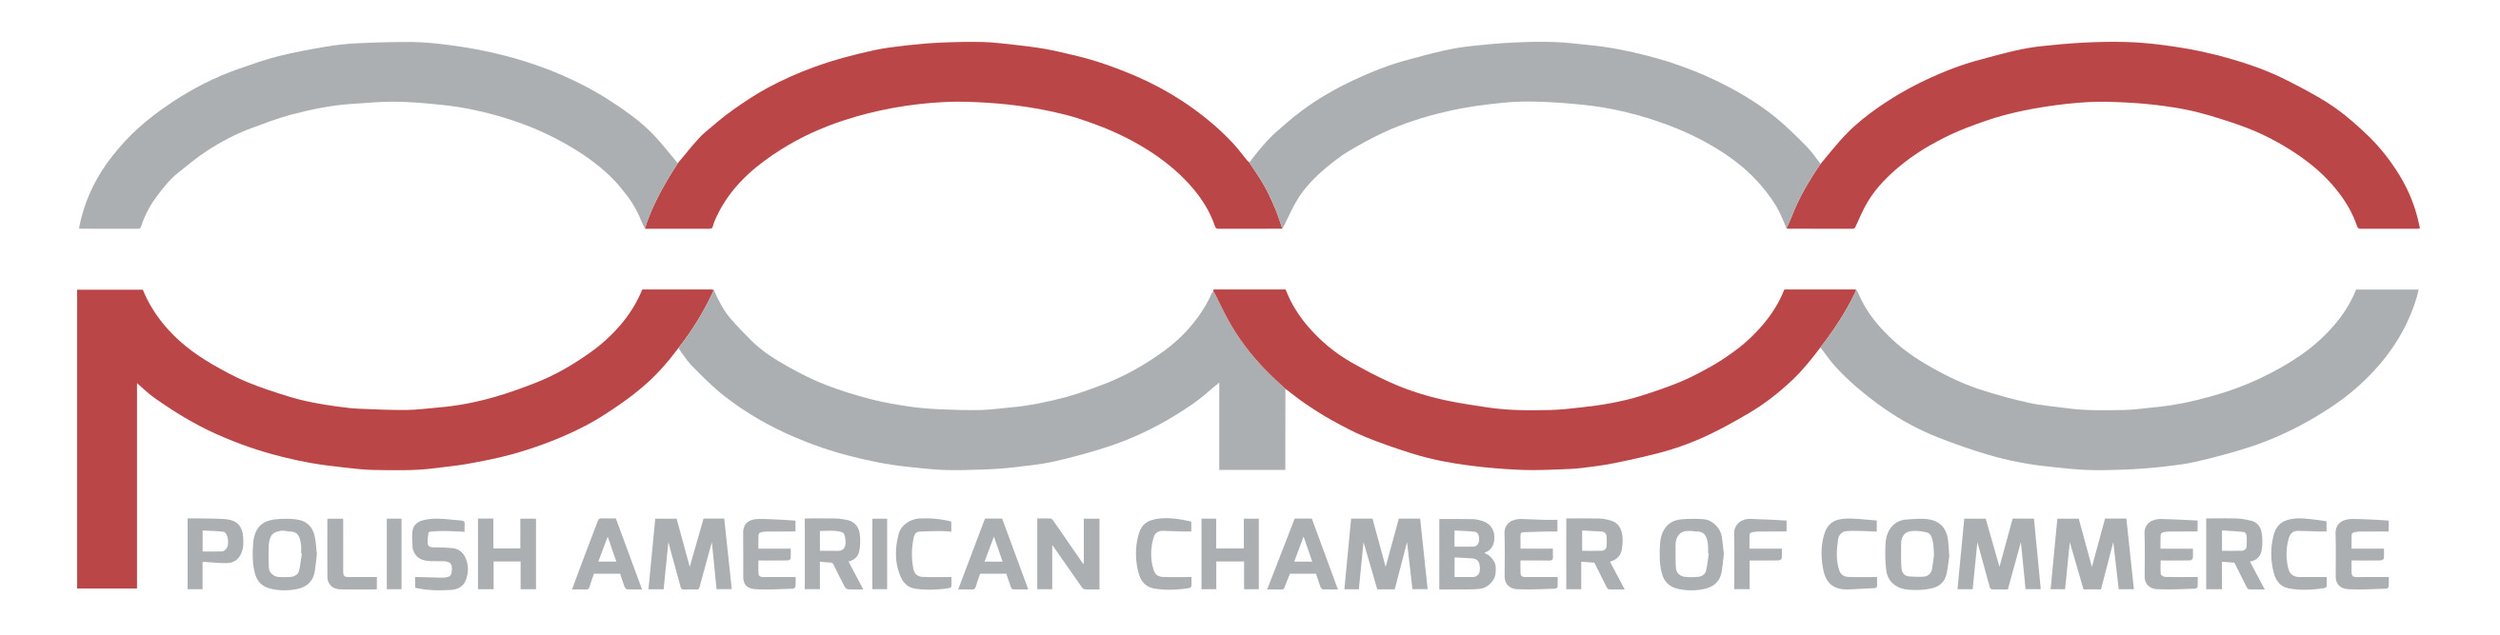 PACC-Logo.jpg